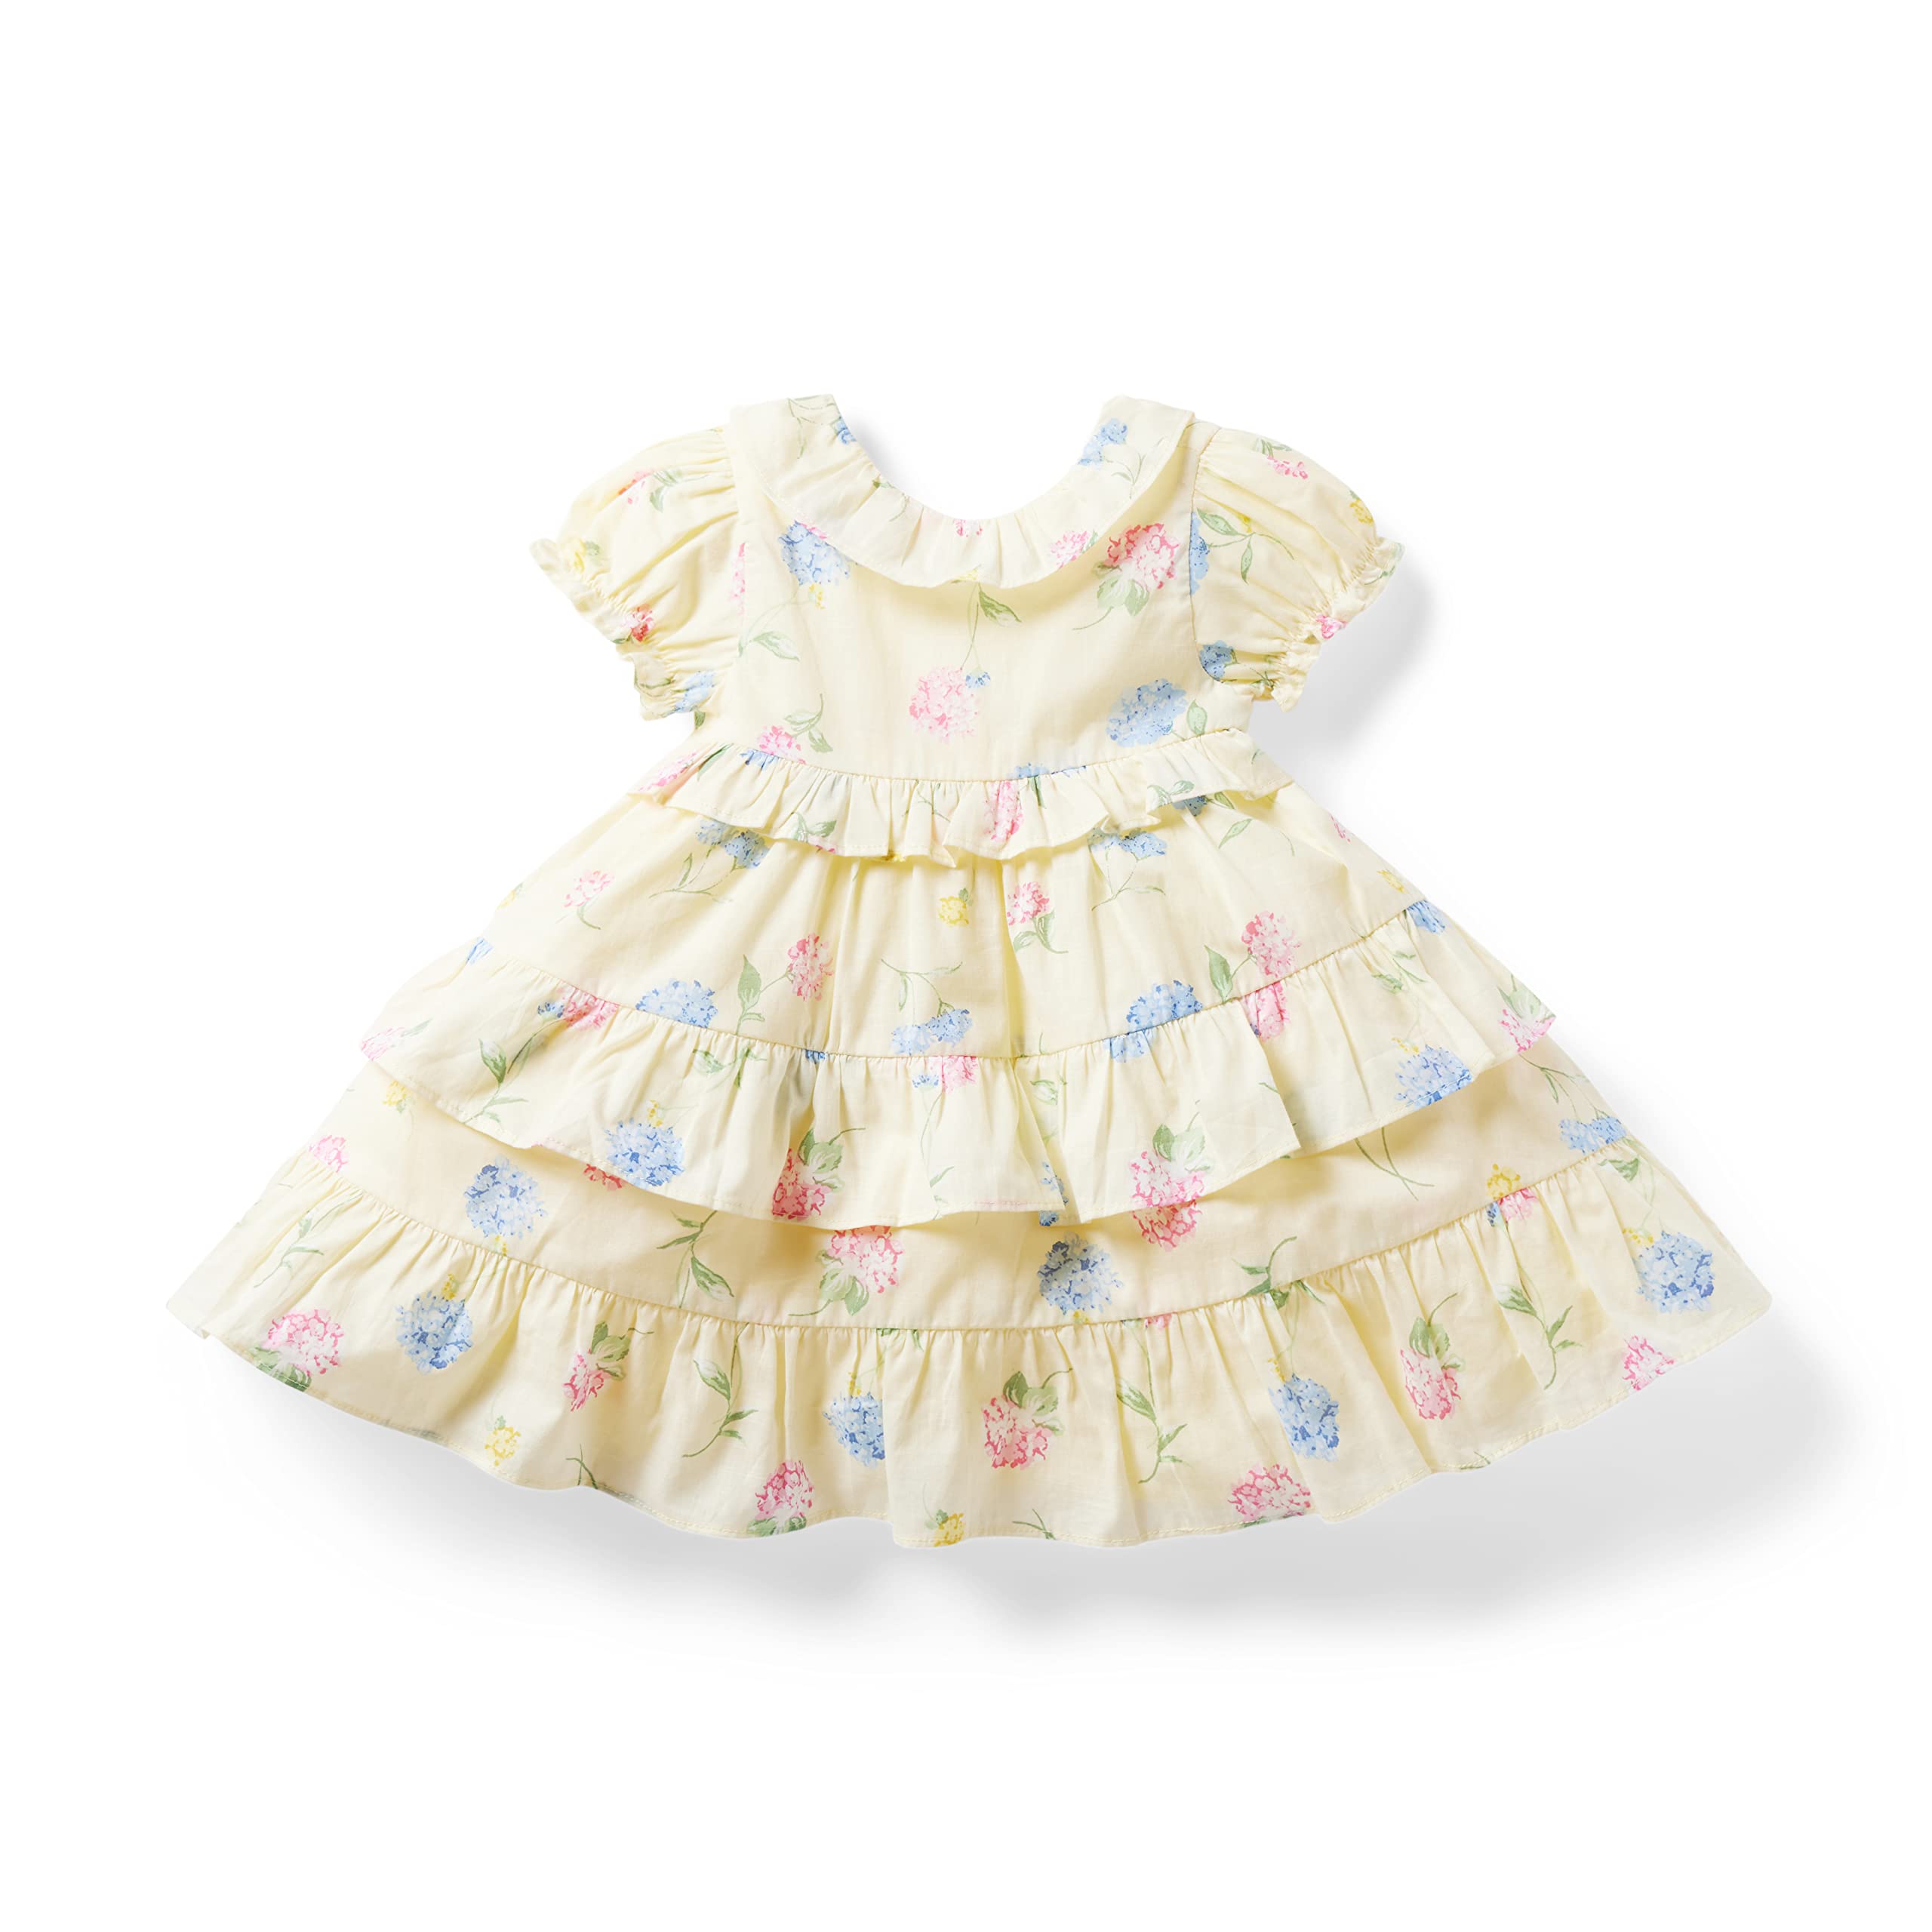 Многоярусное платье с цветочным принтом (для младенцев) Janie and Jack